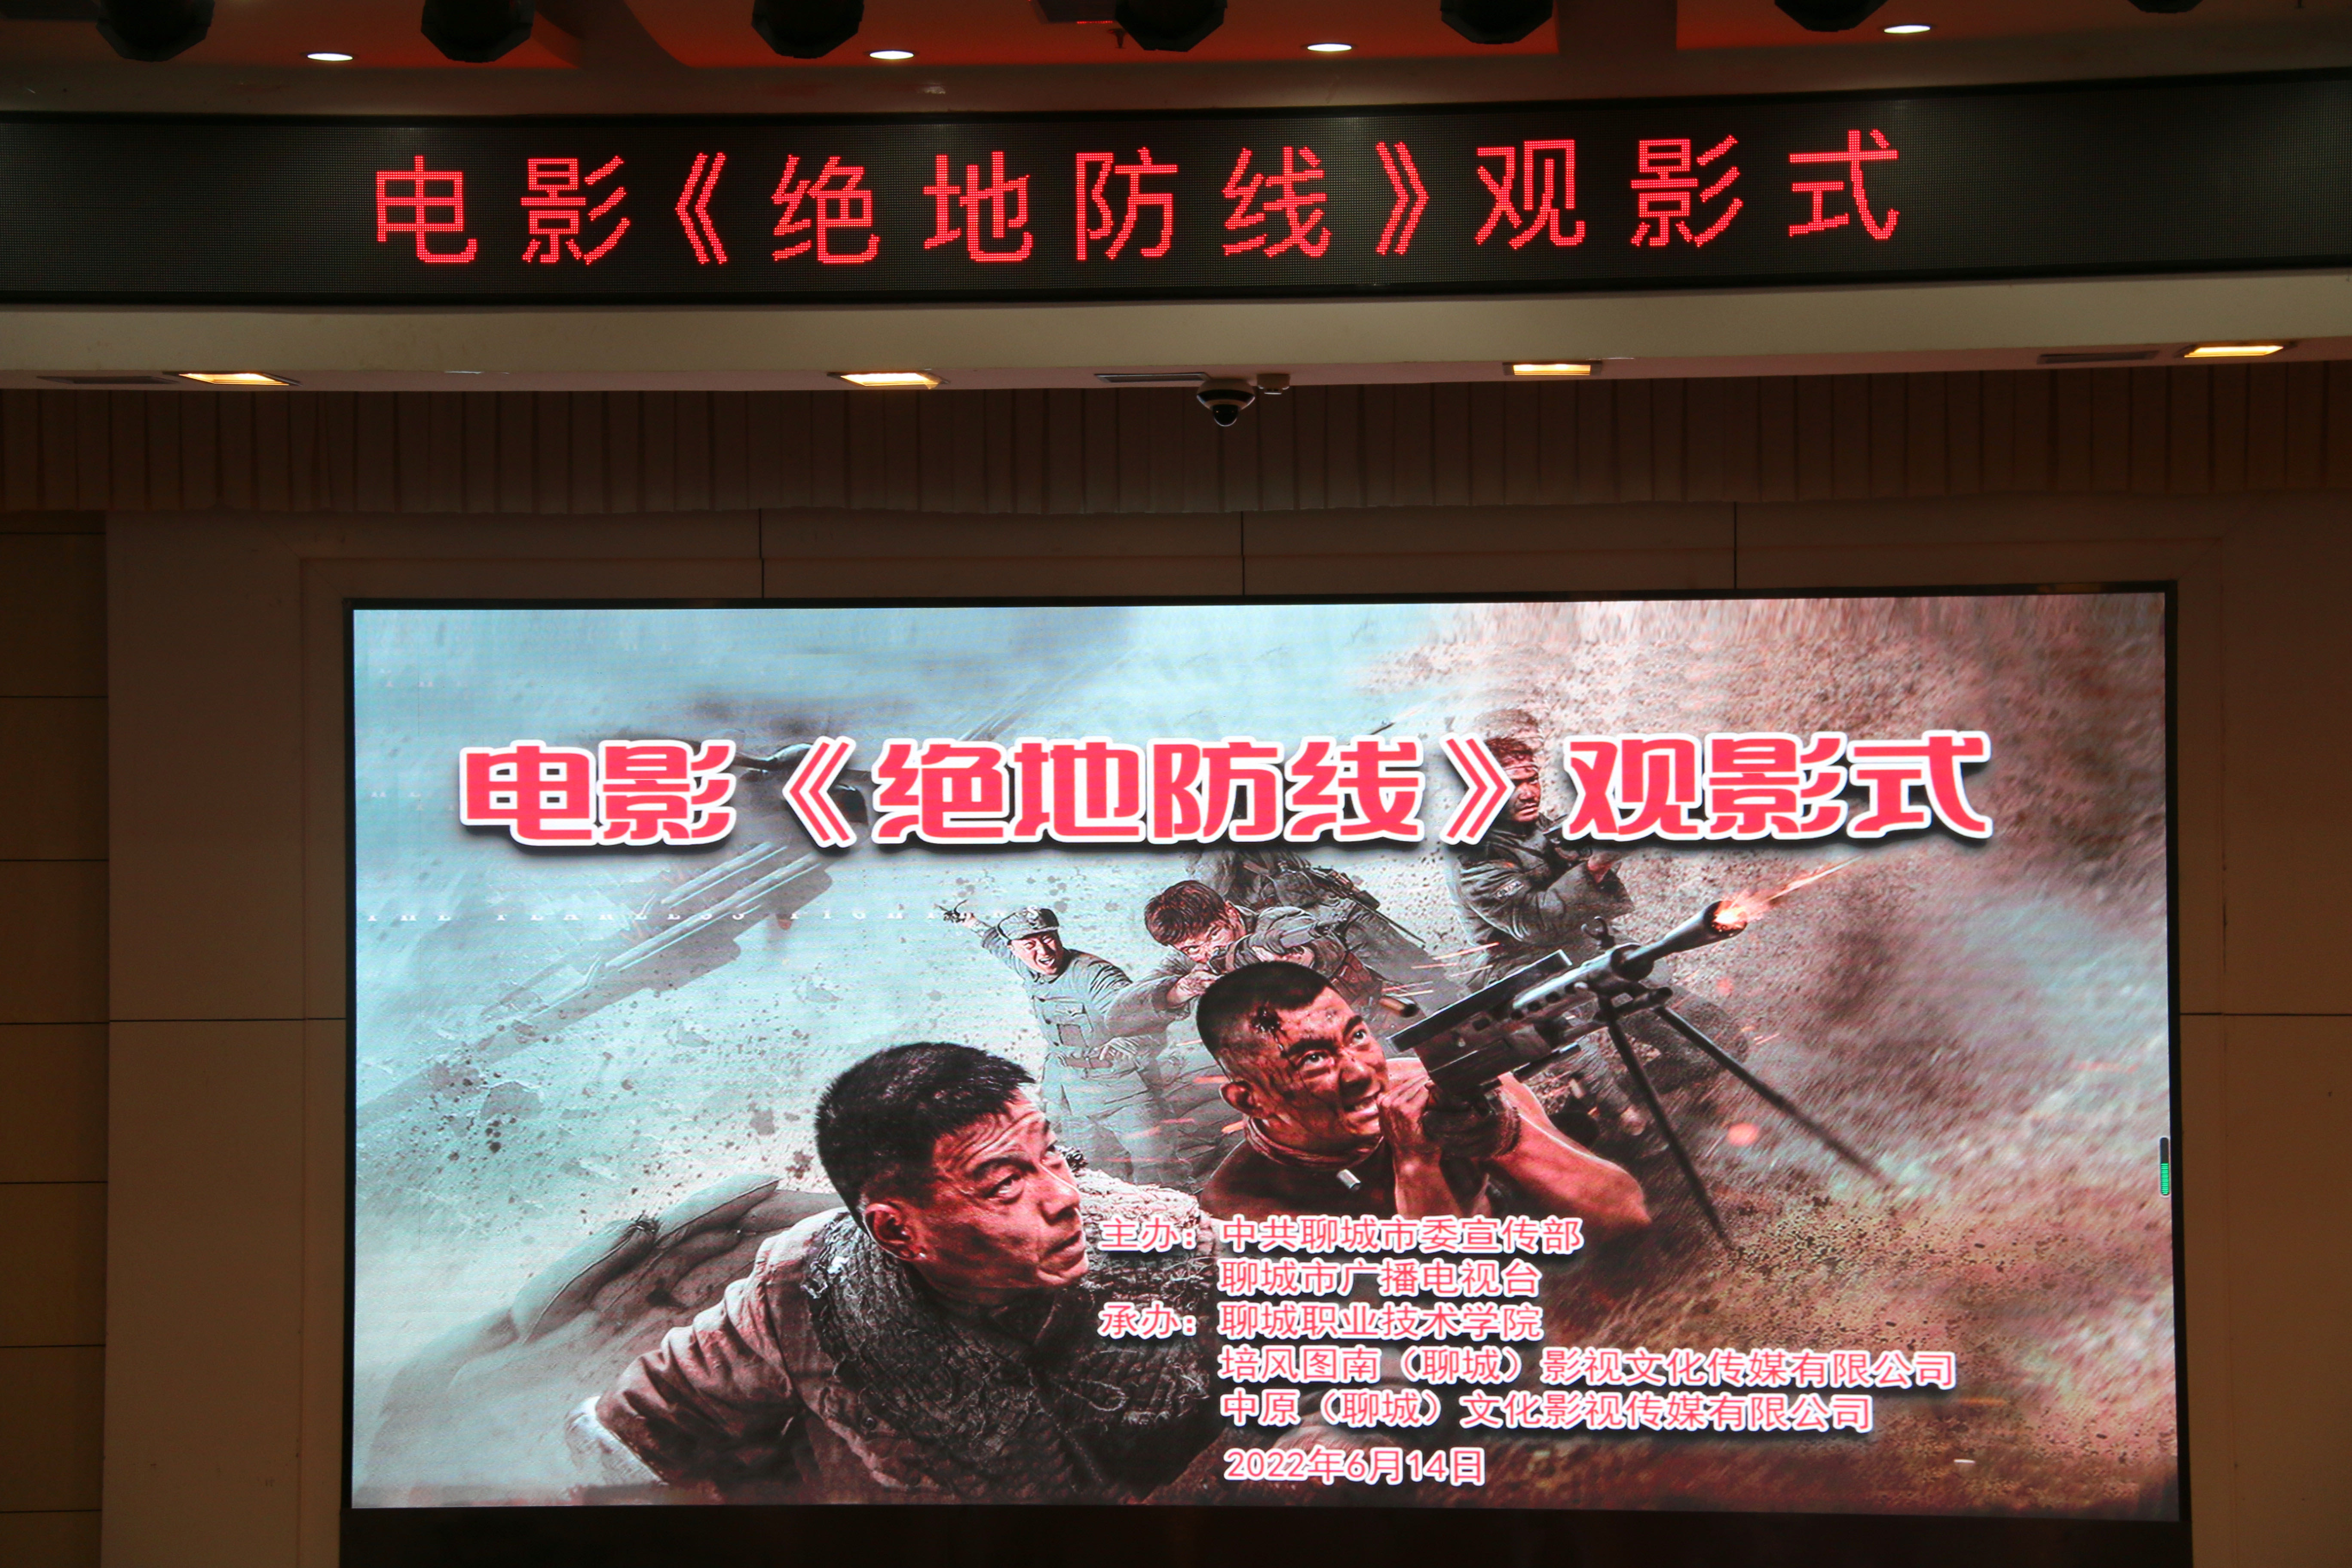 聊城首部抗战题材电影《绝地防线》在聊城职业技术学院举办观影式